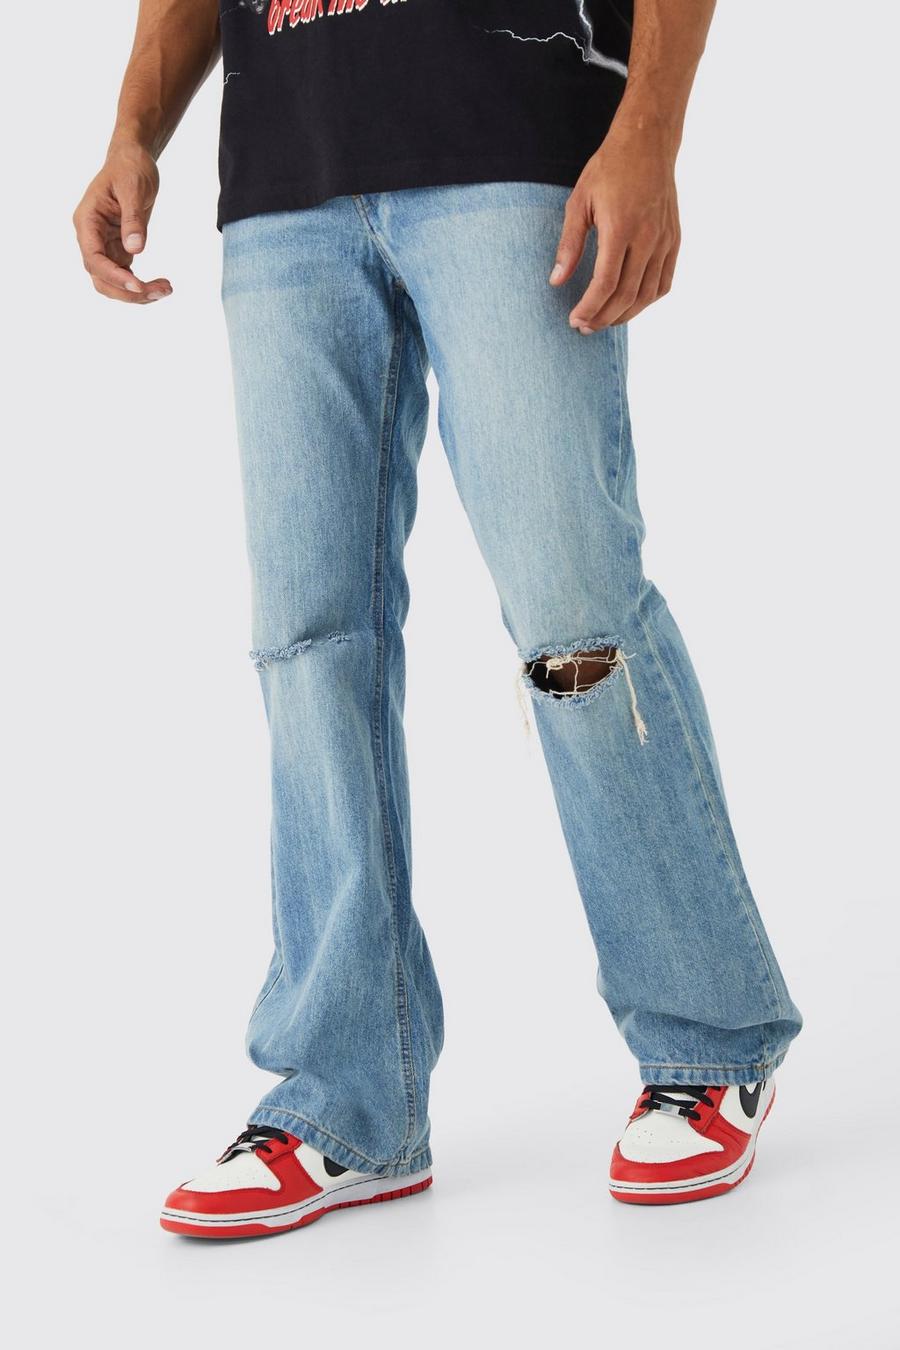 Jeans a zampa extra comodi in denim rigido, Antique wash azzurro